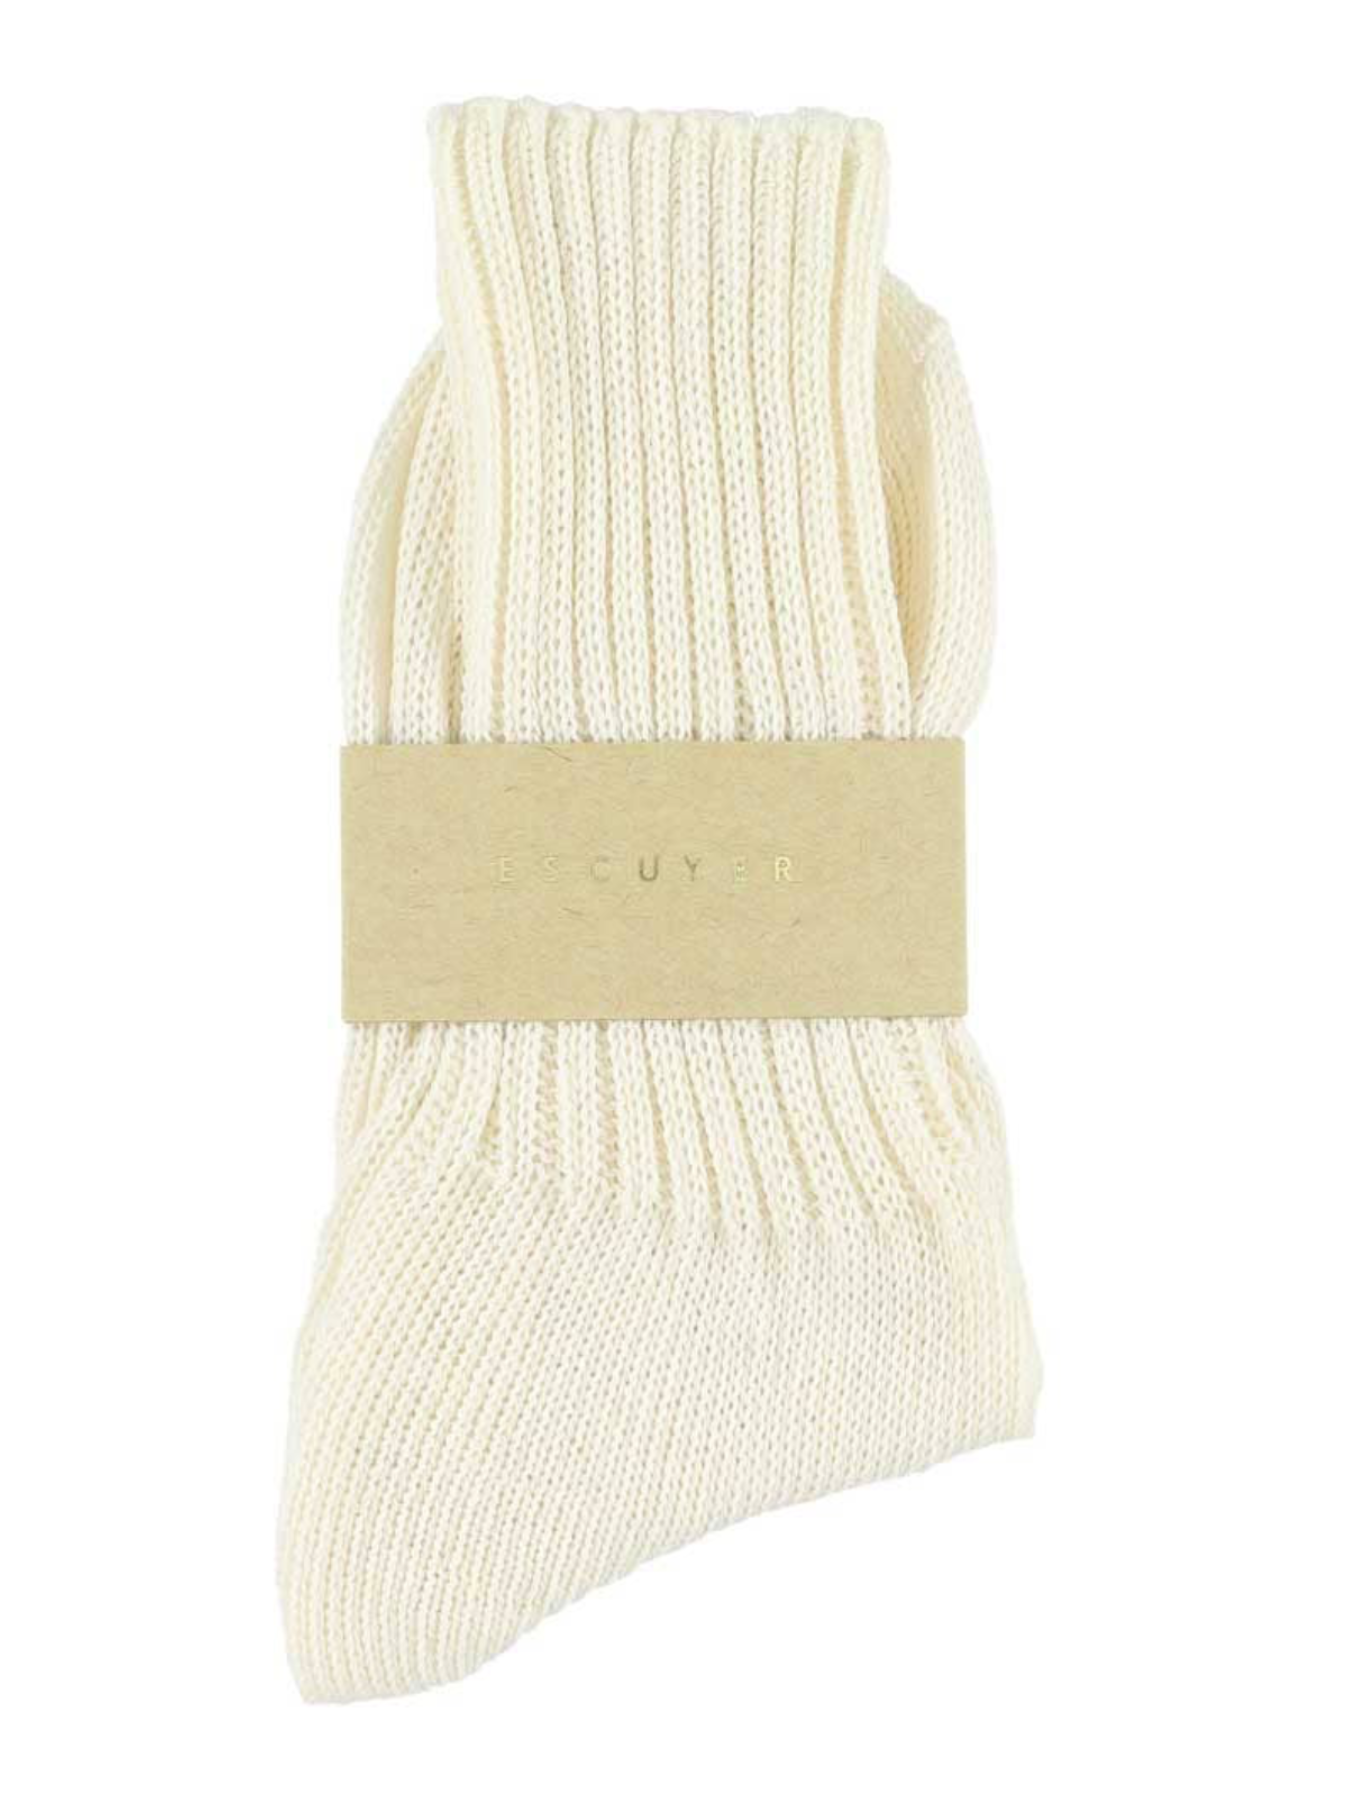 Chaussettes tricotées pour femmes  - Blanc cassé